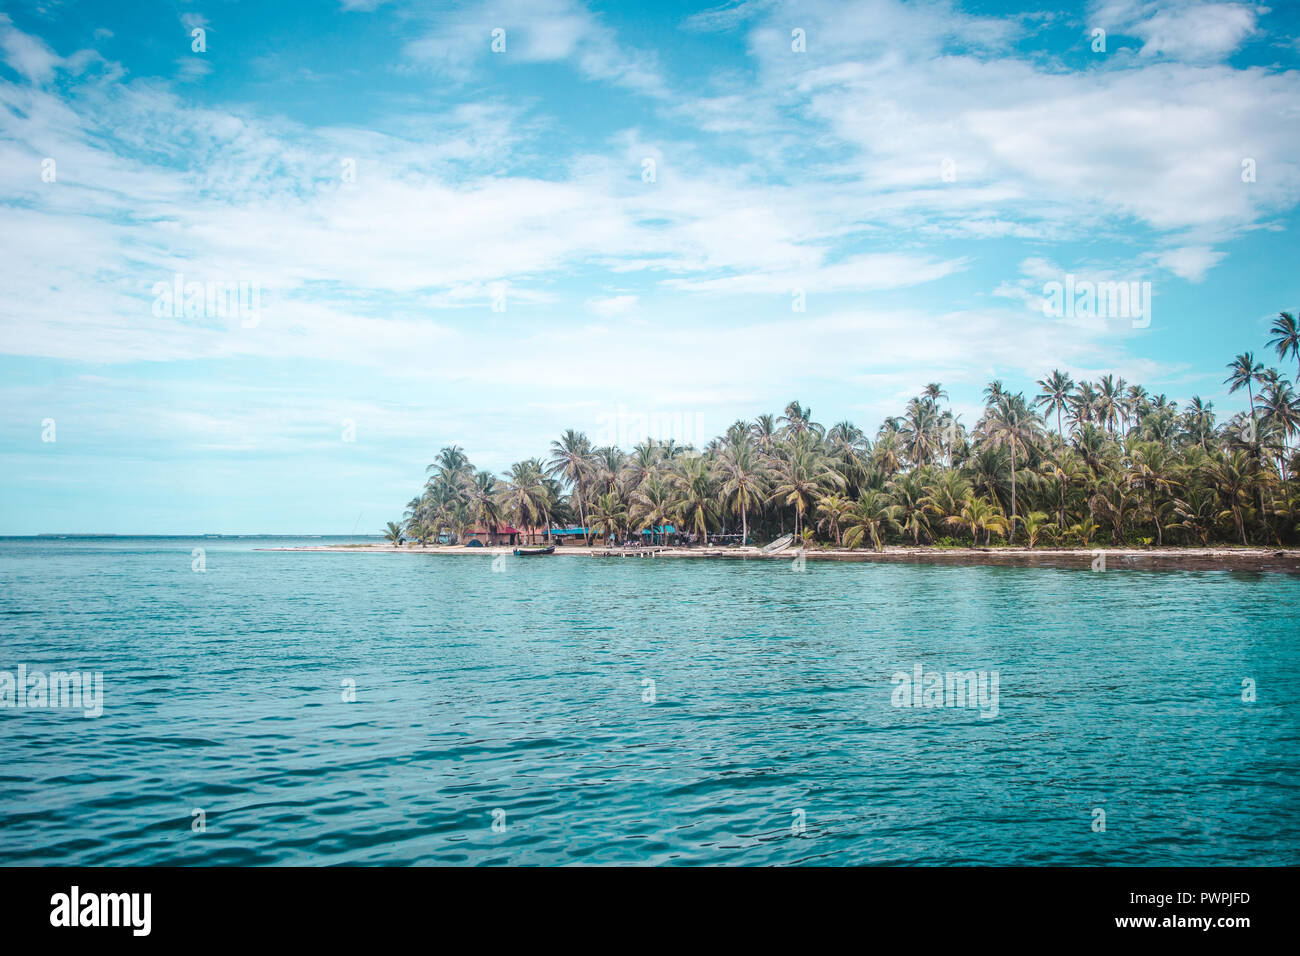 Acque turchesi attorno al tropical San Blas isole al largo della costa caraibica del Panama Foto Stock